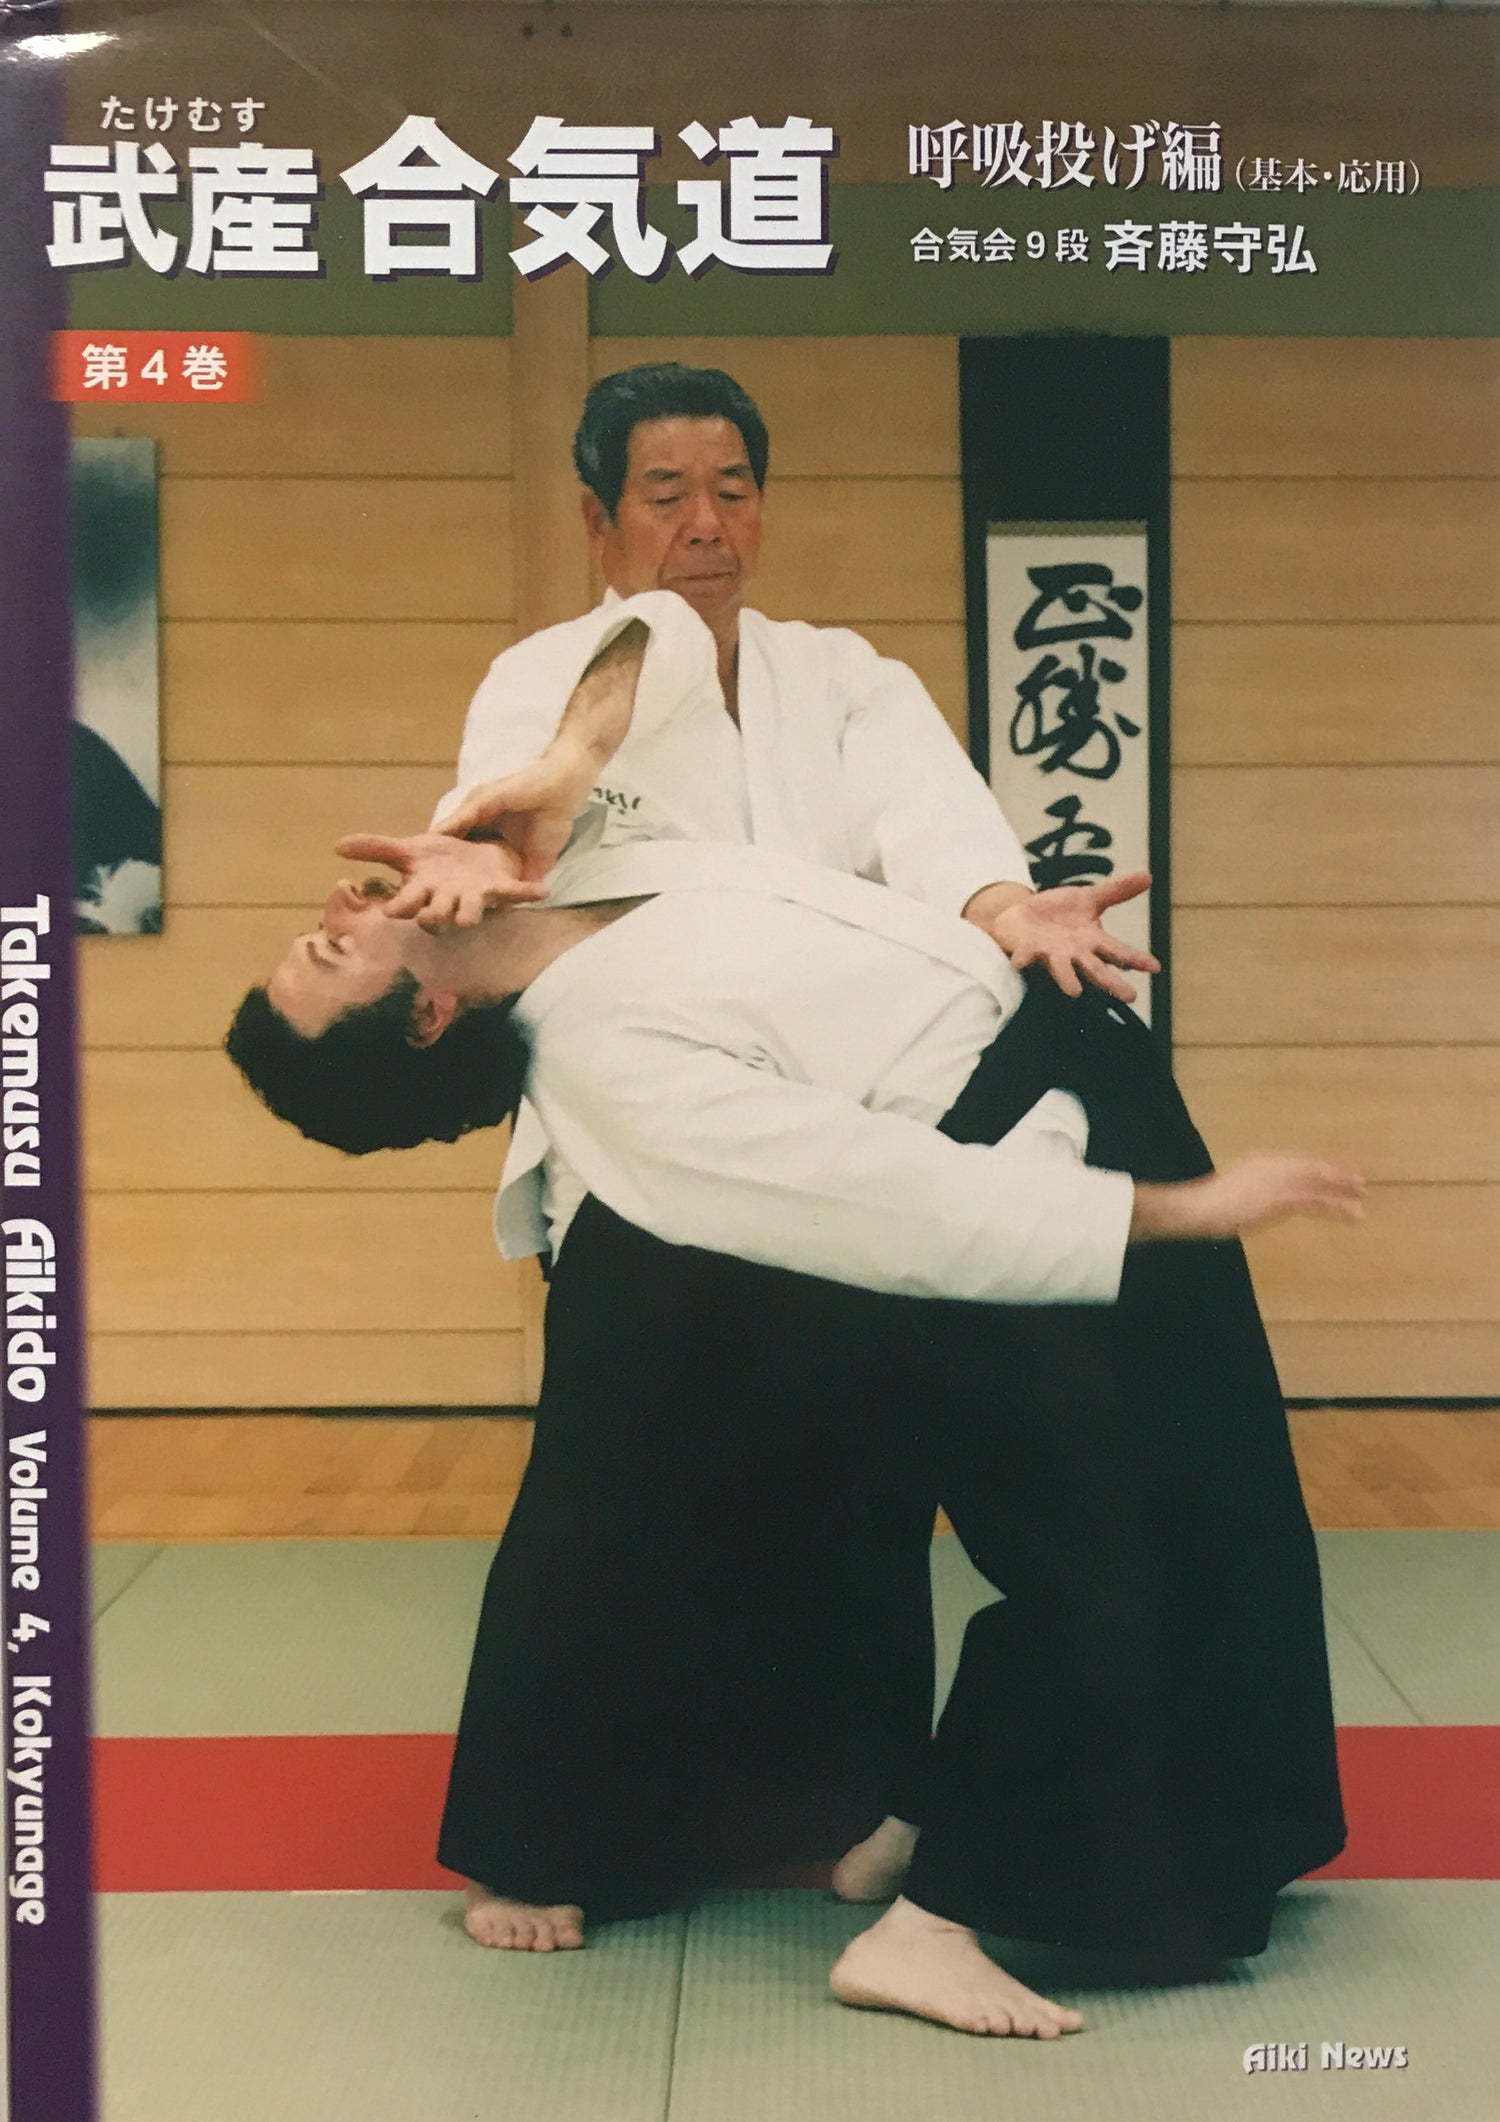 Takemusu Aikido Book 4: Kokyunage by Morihiro Saito (Preowned) - Budovideos Inc